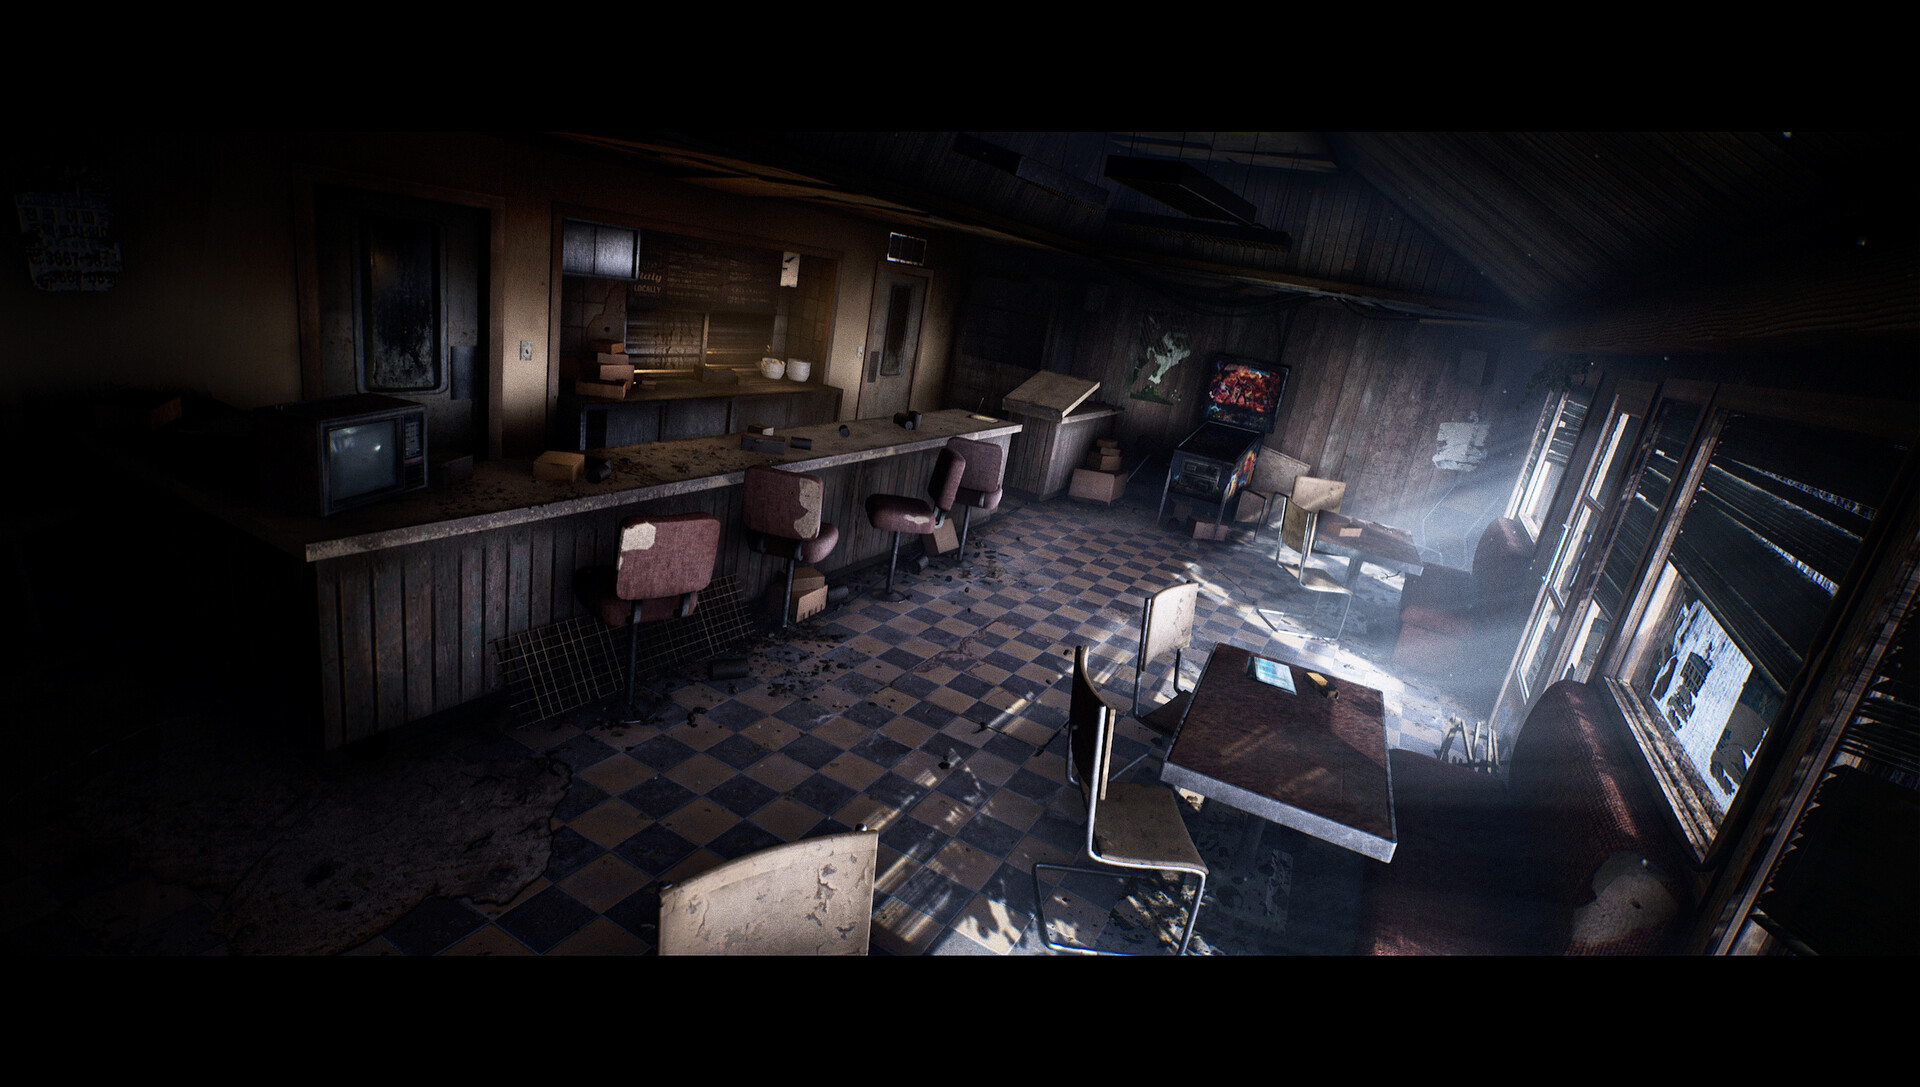 Художник воссоздал кафе из Silent Hill на Unreal Engine 4